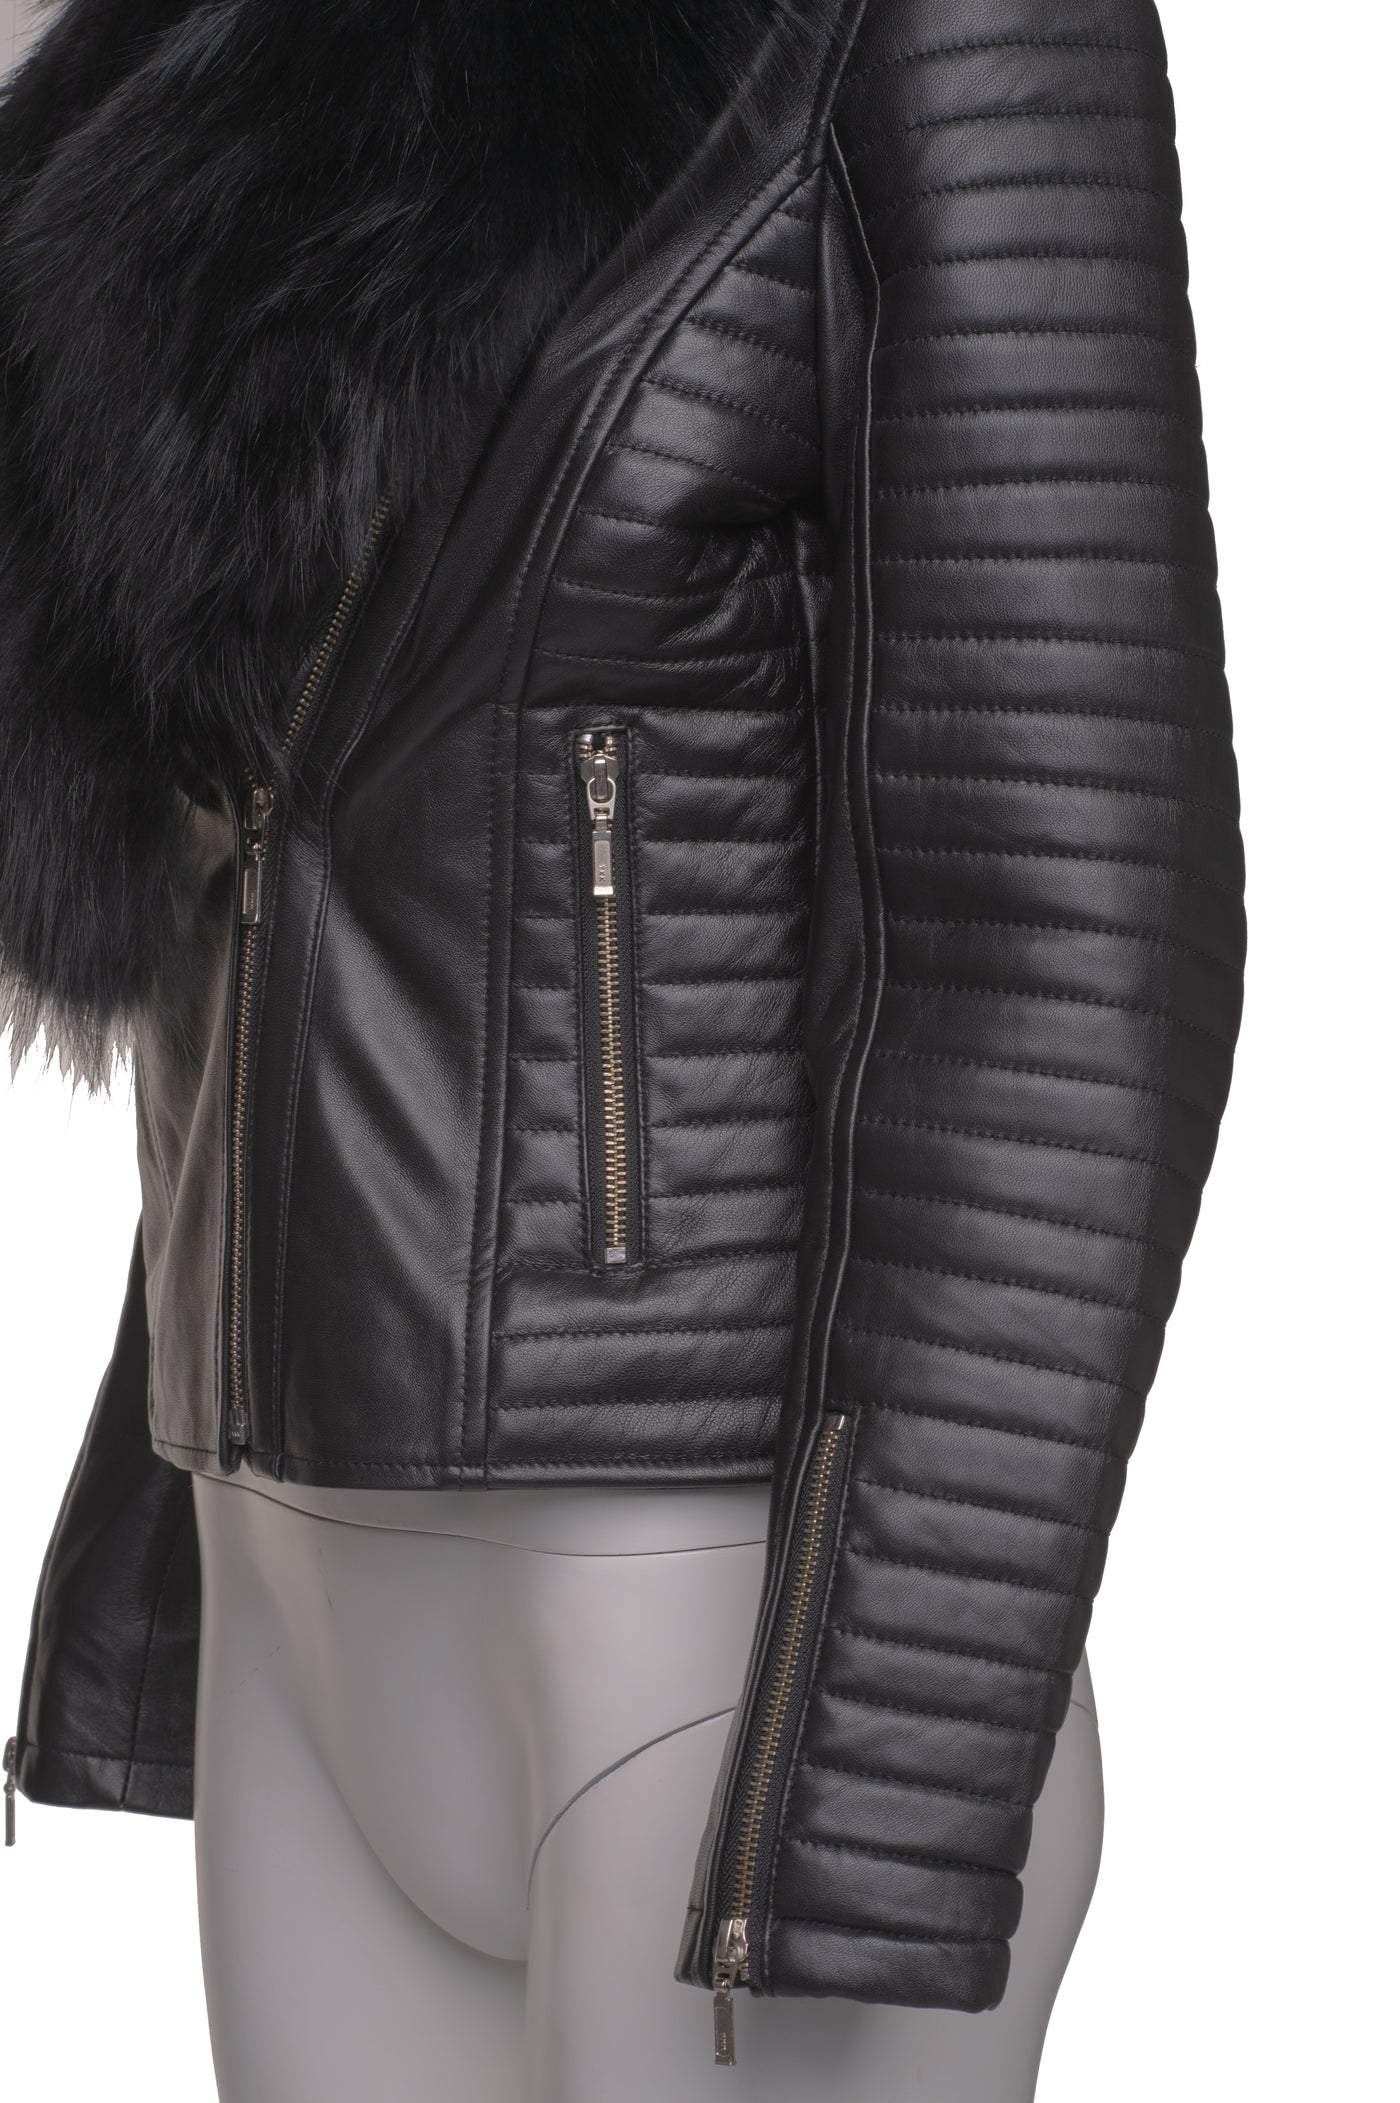 Amarah's Large Fur Shawl Leather Jacket